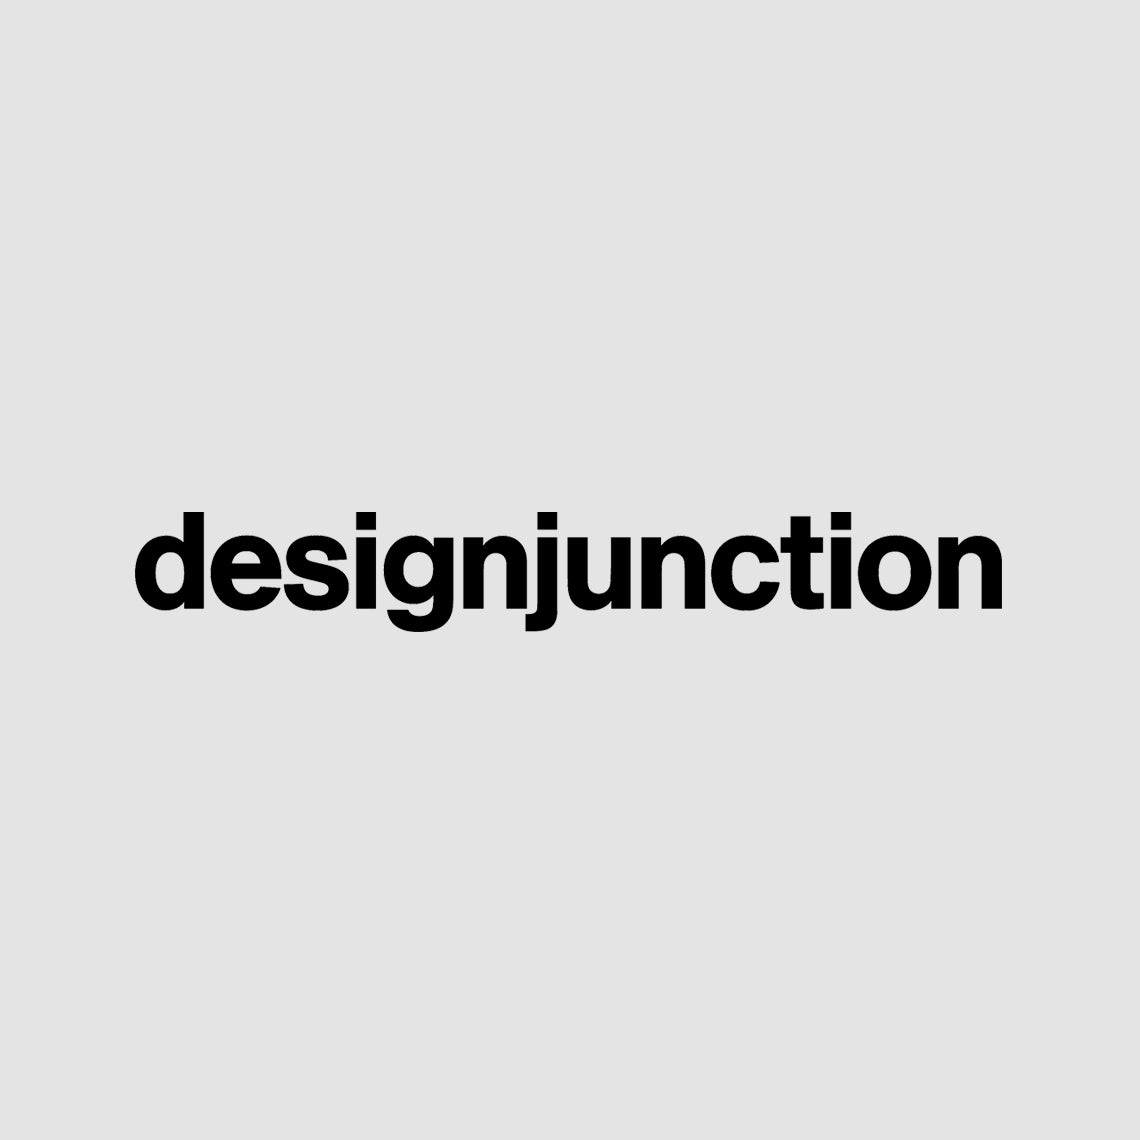 Designjunction logo